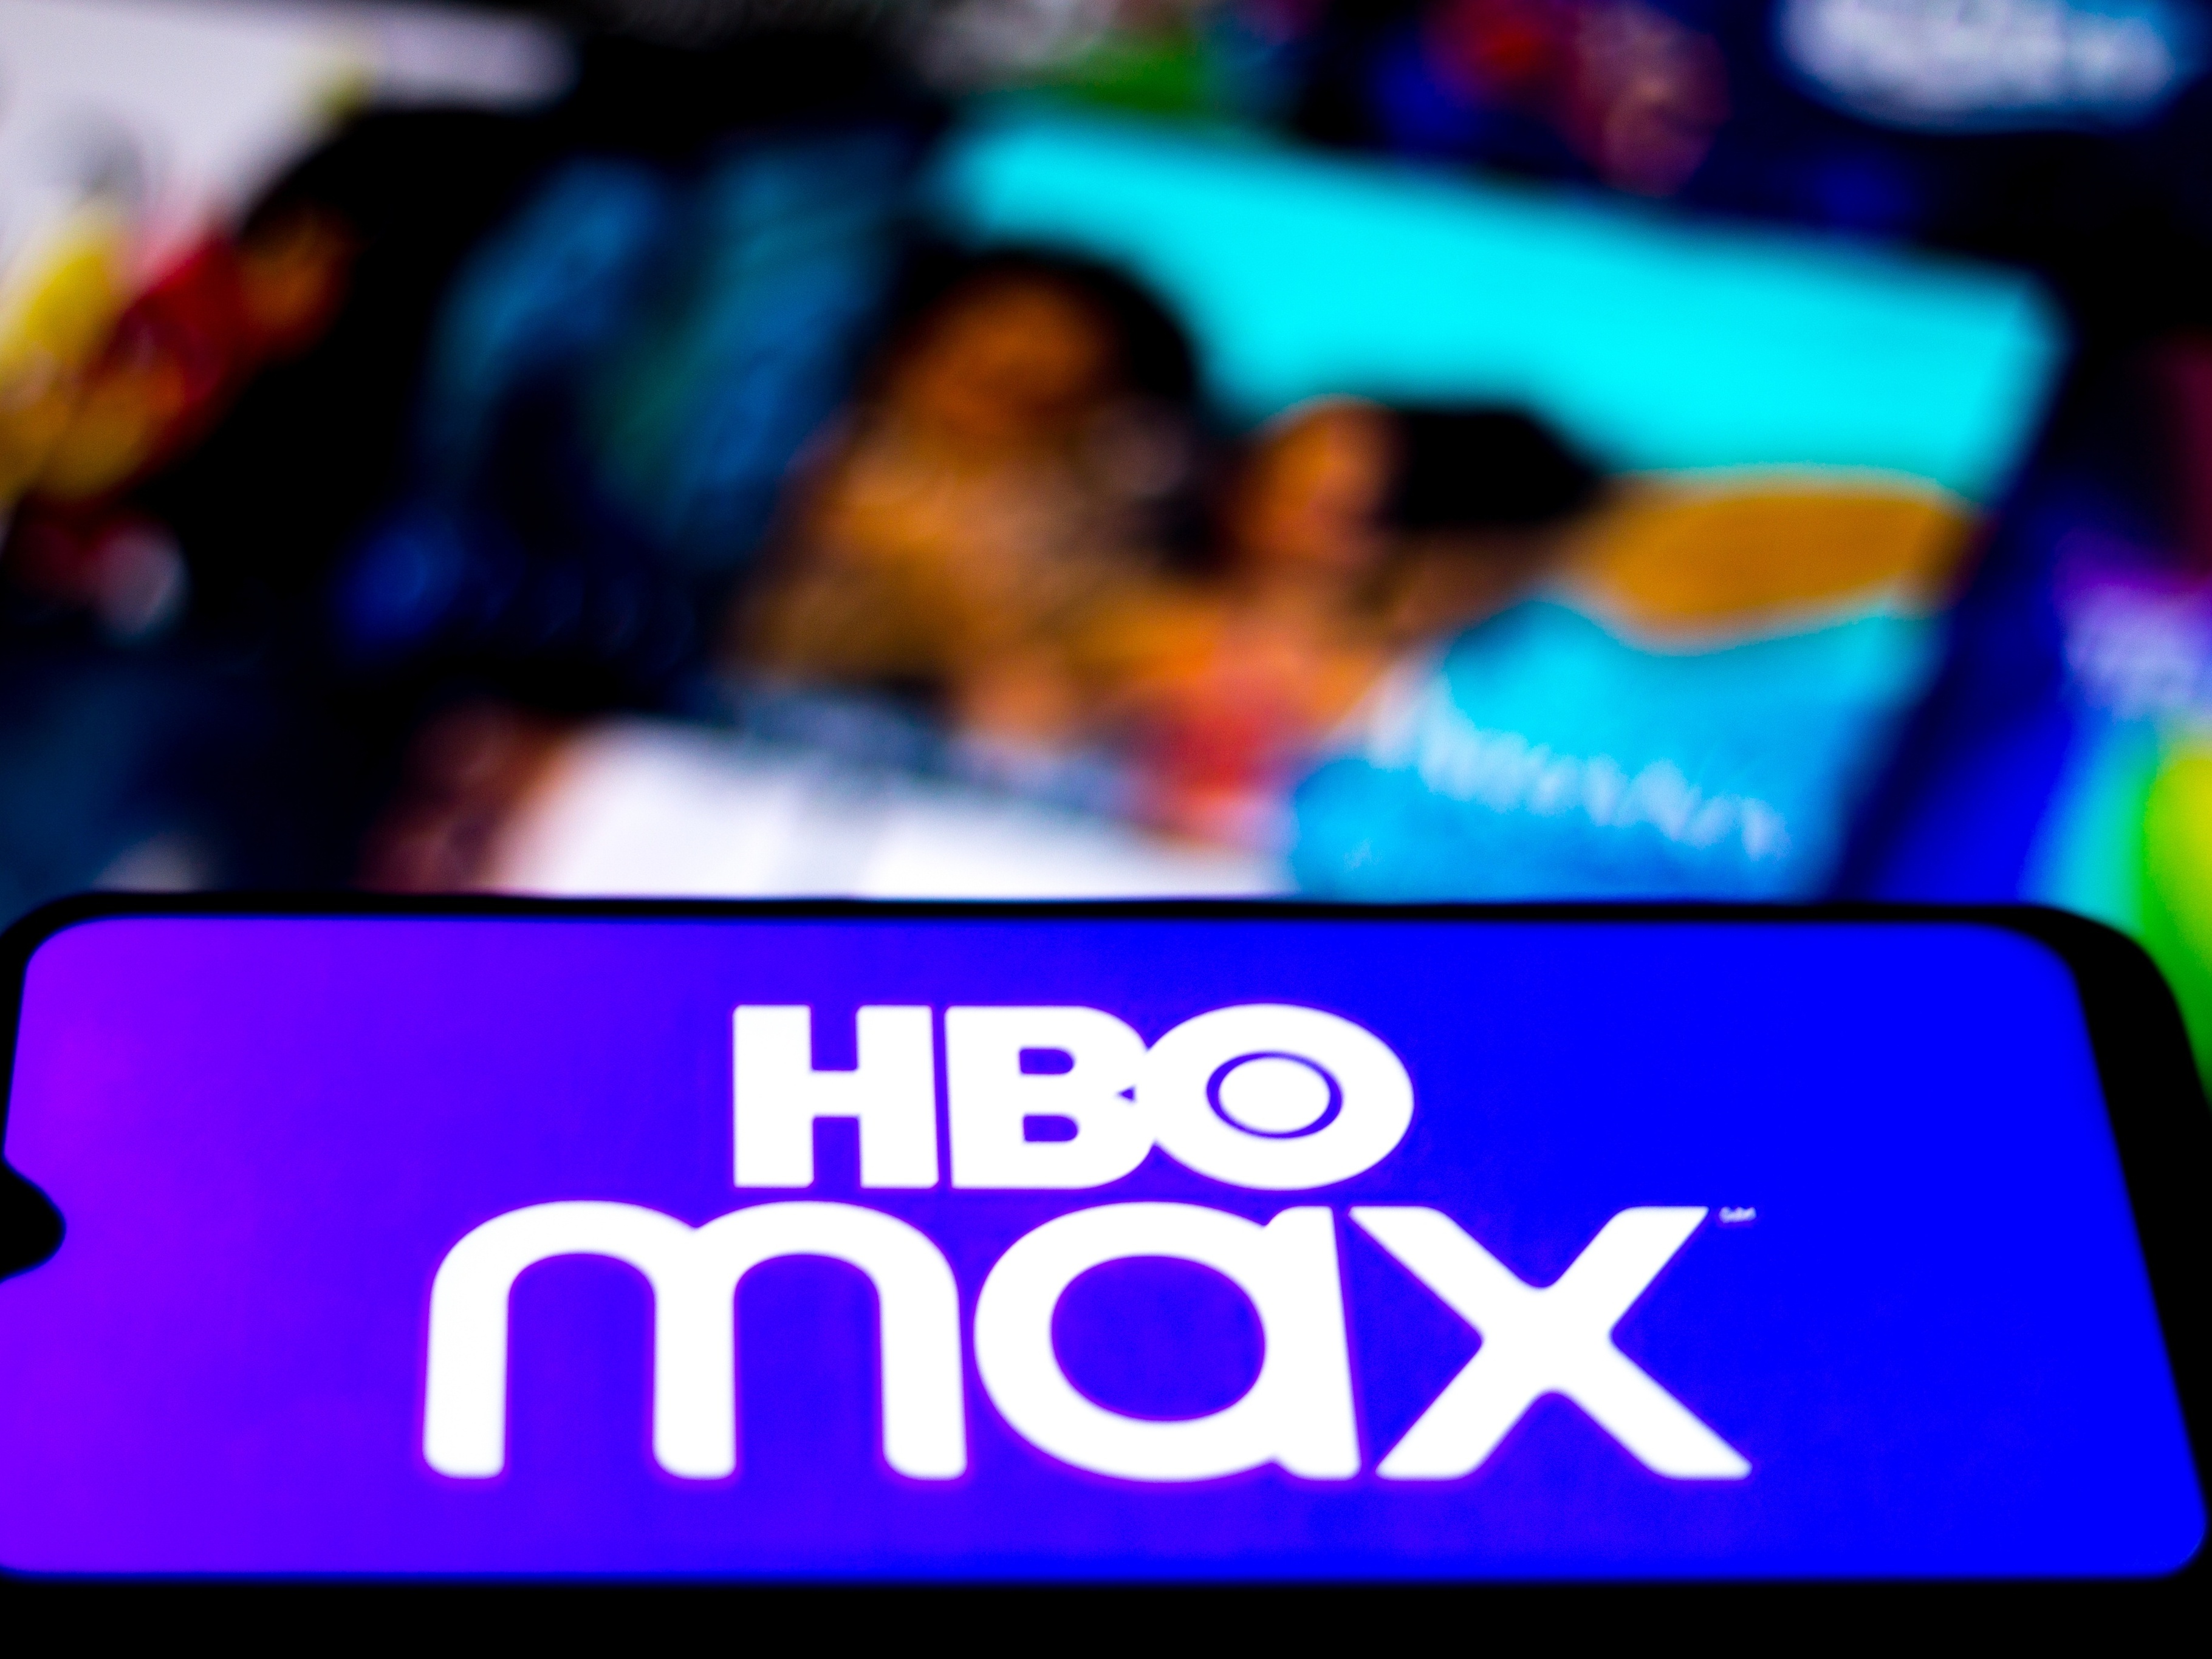 HBO Max Brasil on X: Se esse ano já foi demais, imagina 2023? O novo ano  tá chegando com as melhores séries pra você maratonar! Assine agora. / X